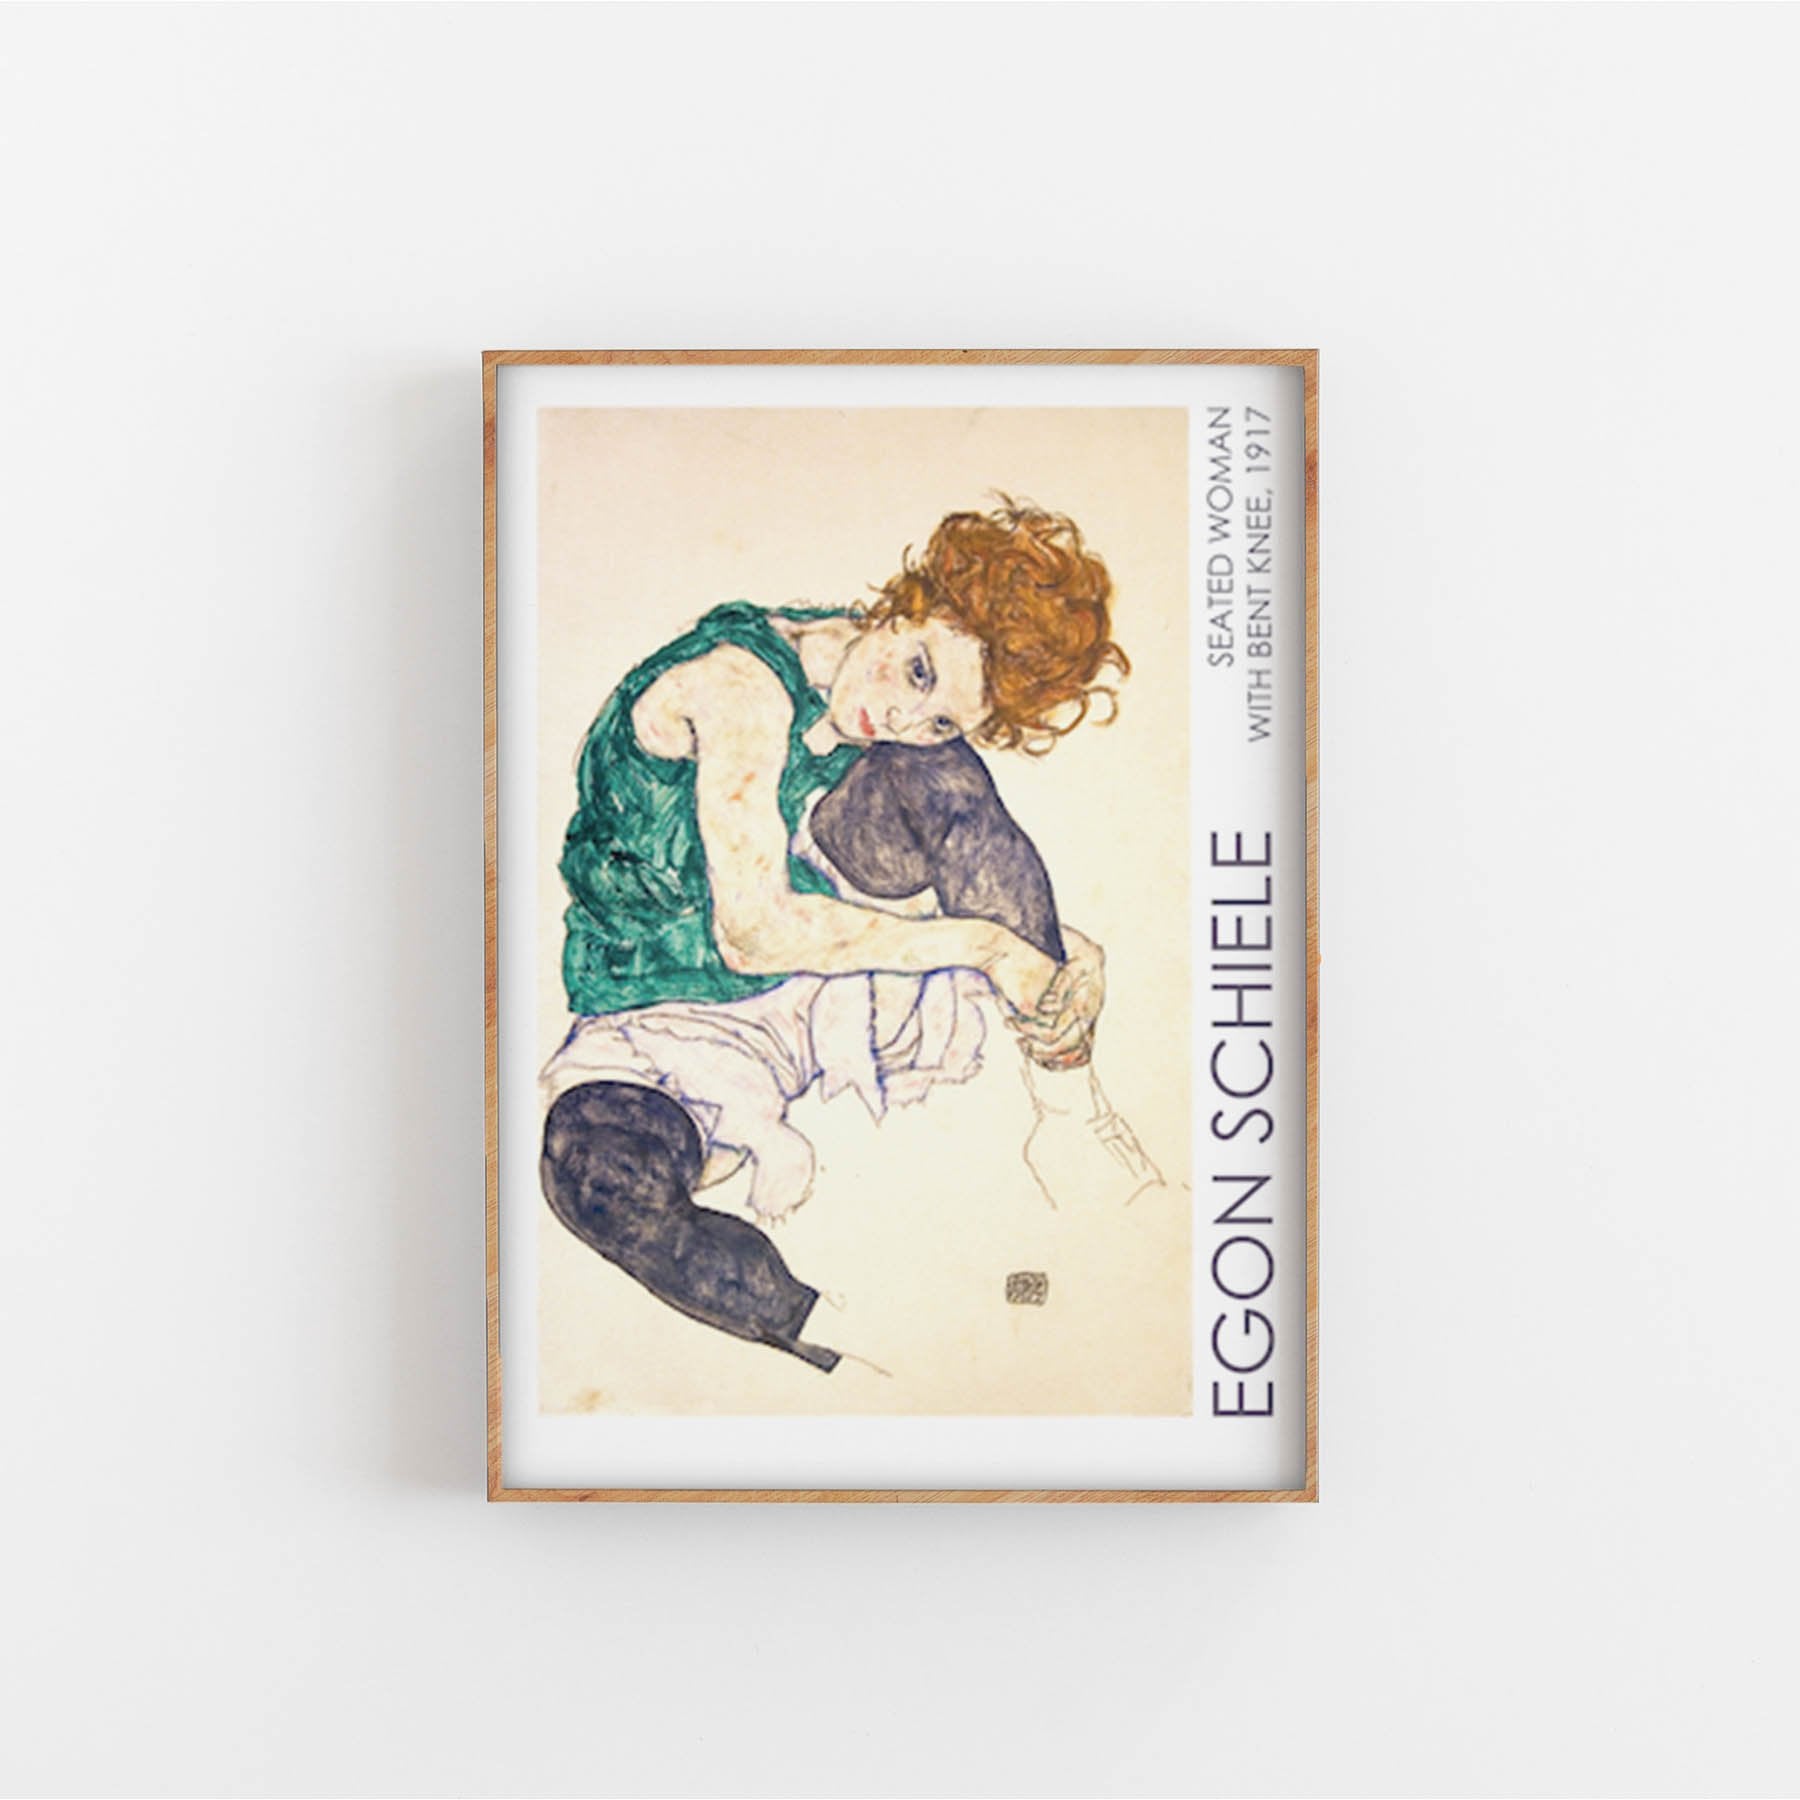 Egon Schiele, art print, Kunsttryk, Konsttryck, kunsttrykk, kunstdruck, poster,  affiche, affisch